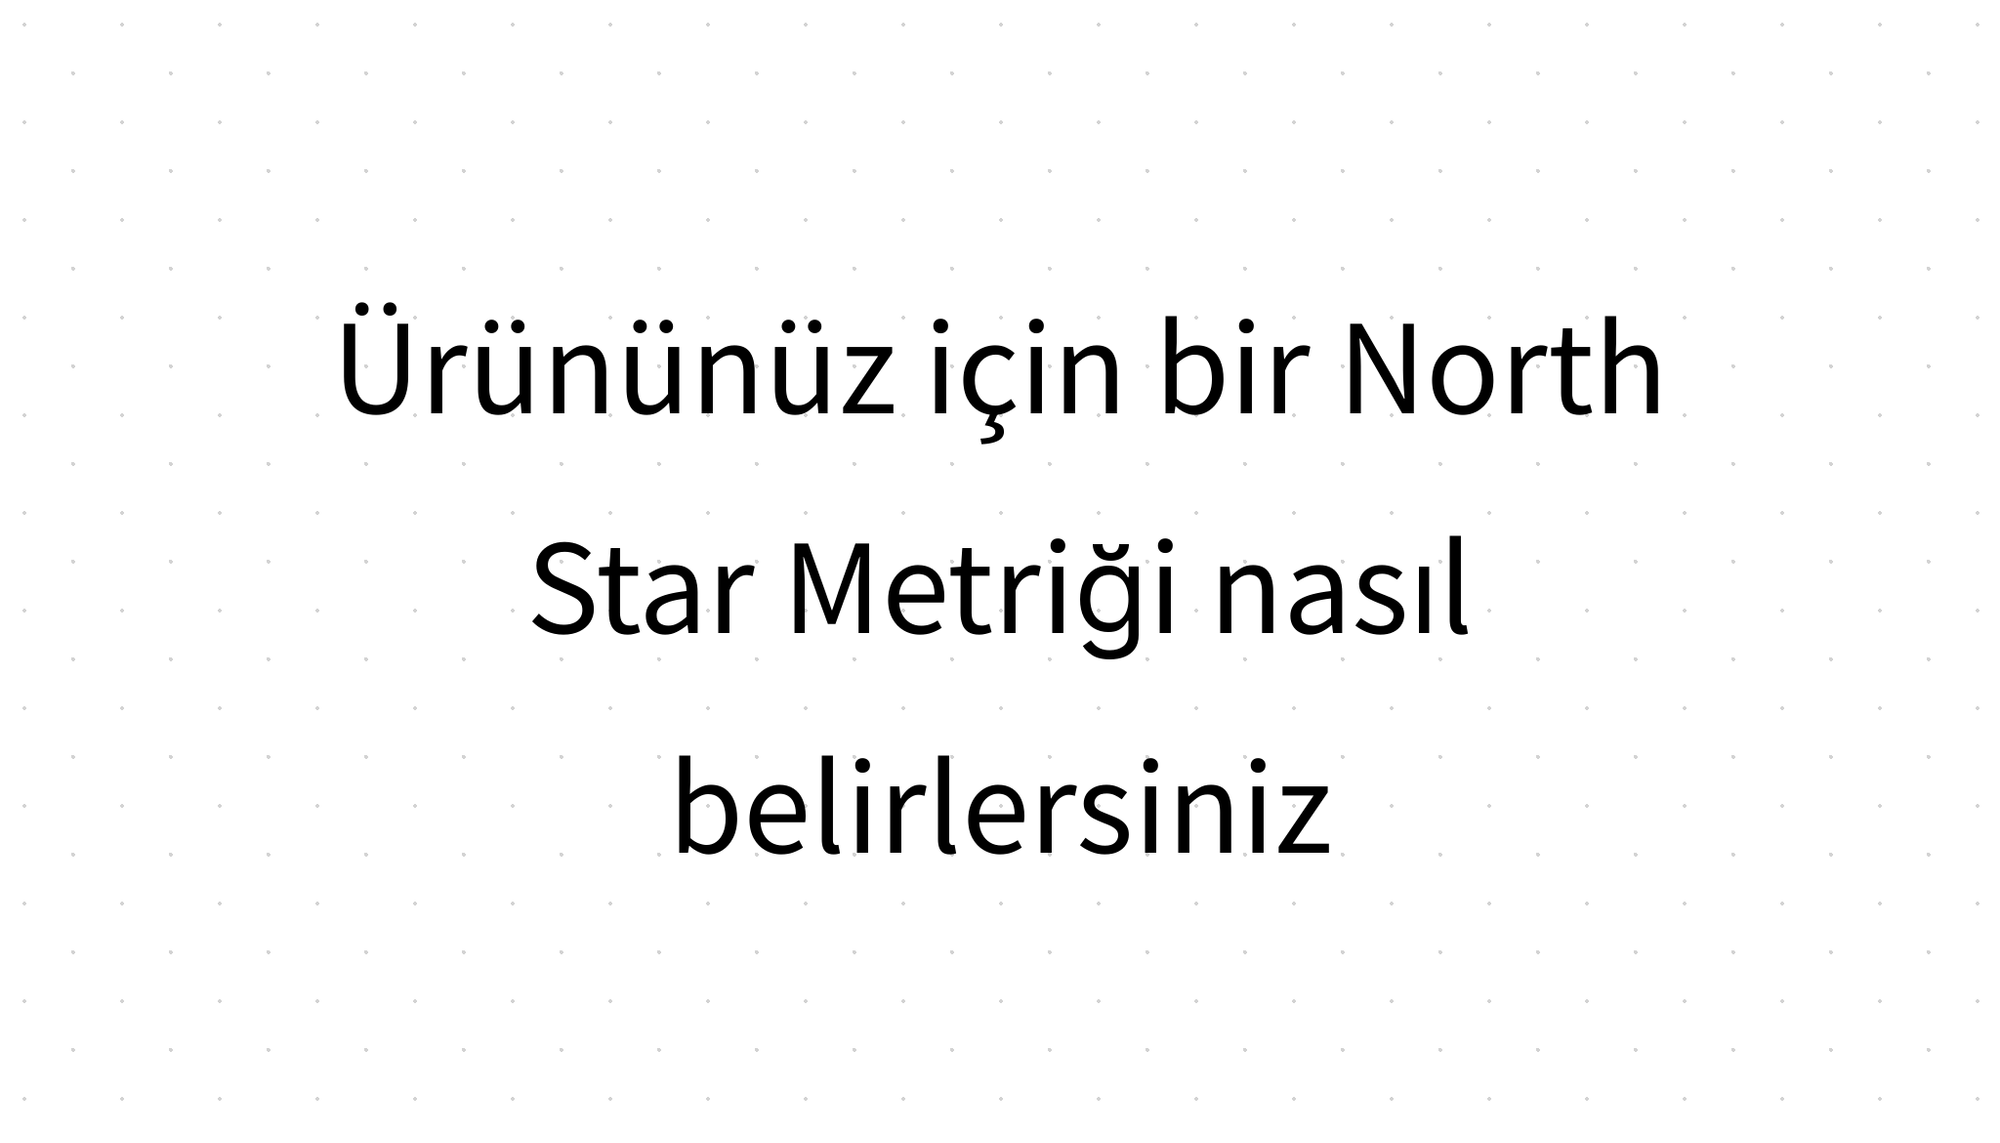 Ürününüz için bir North Star Metriği nasıl belirlersiniz?